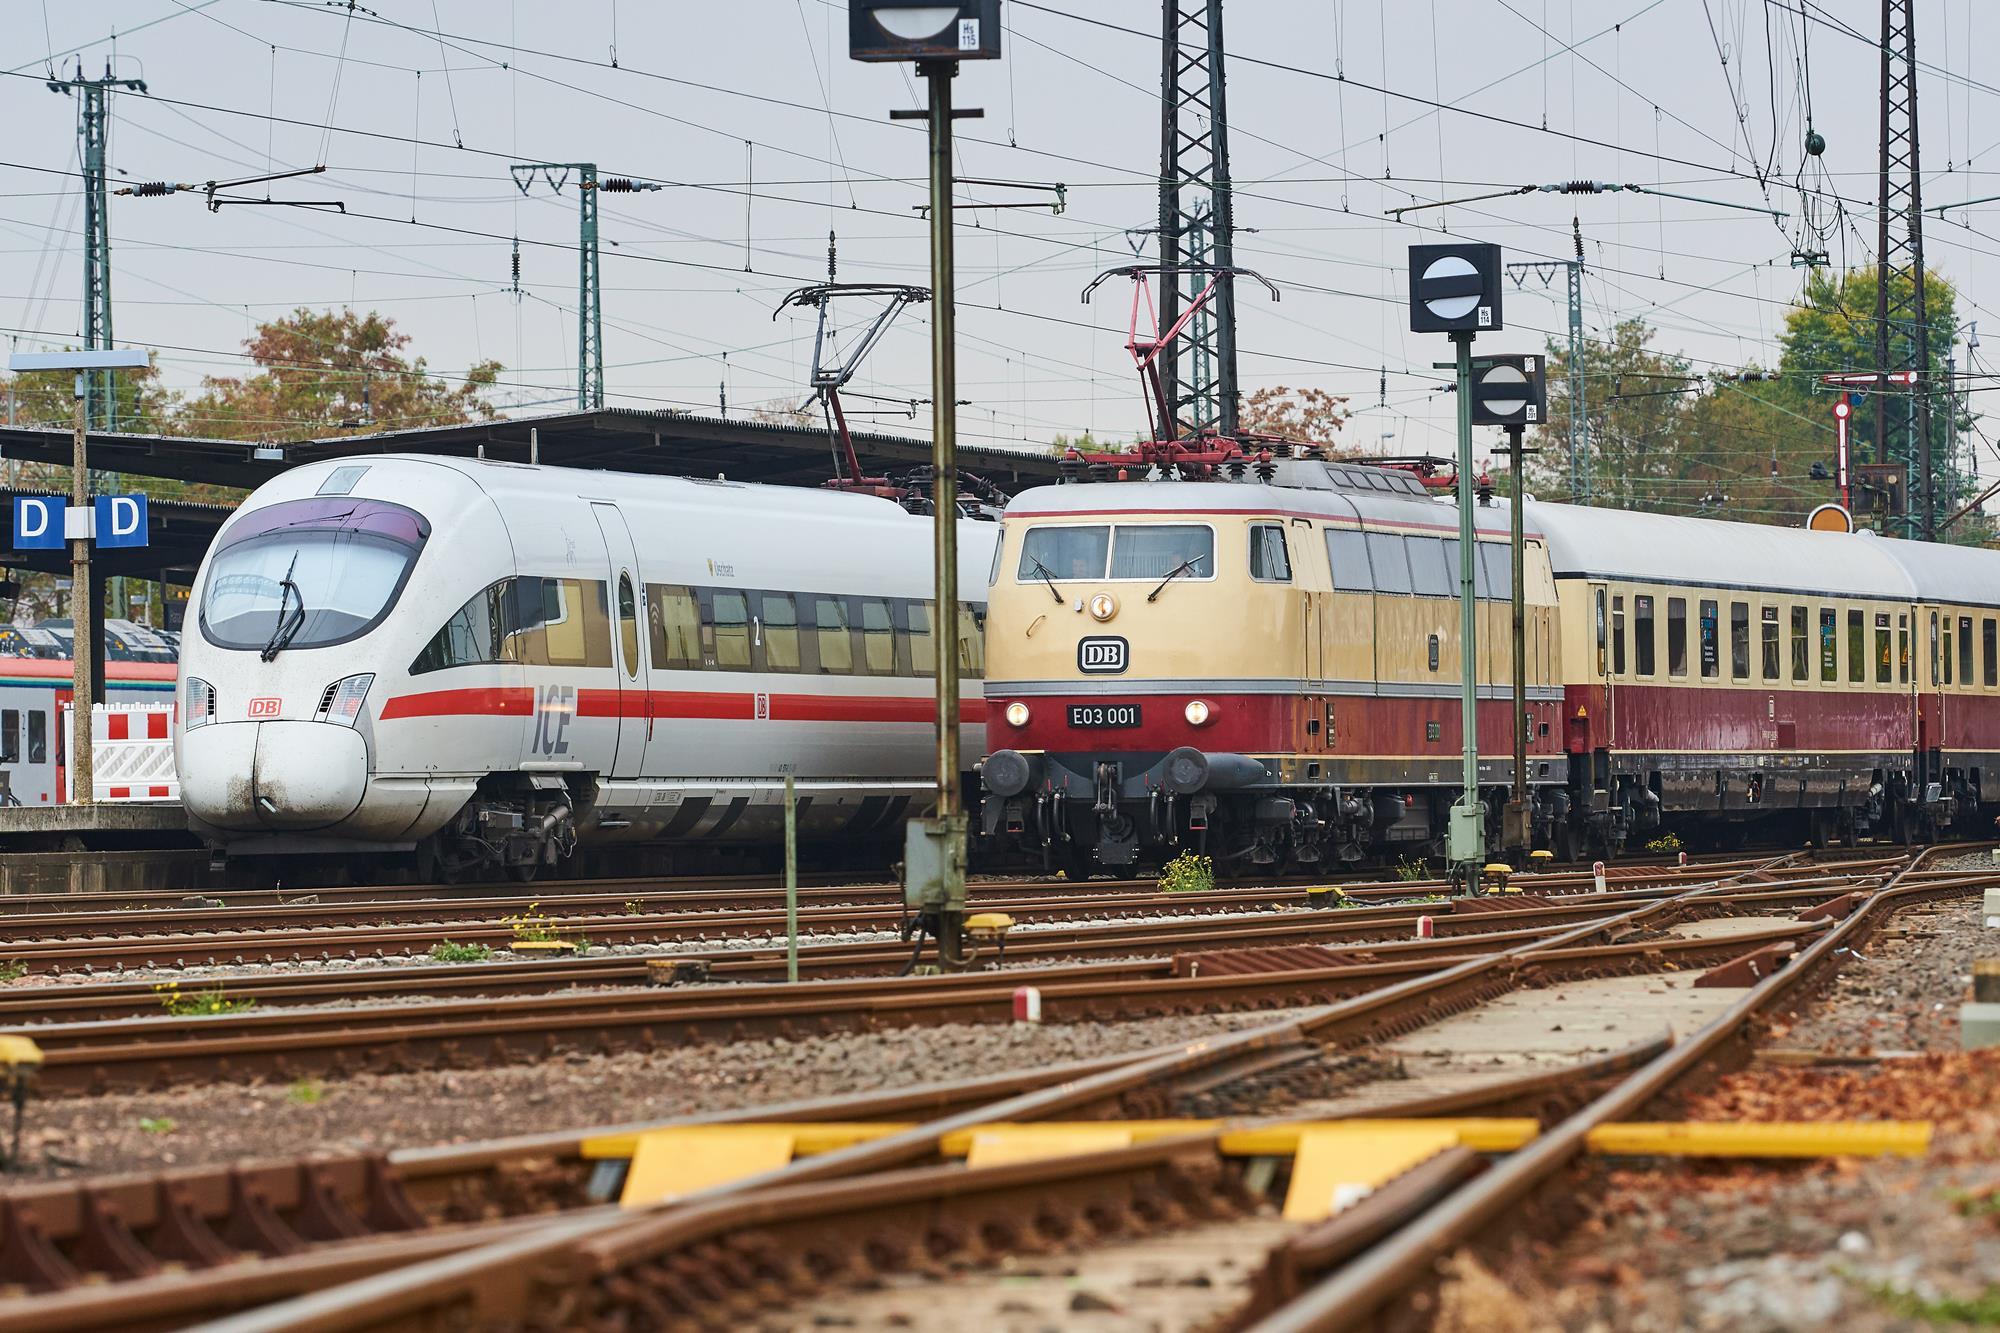 sticker De Kamer katoen Trans-Europ-Express renaissance proposed | News | Railway Gazette  International